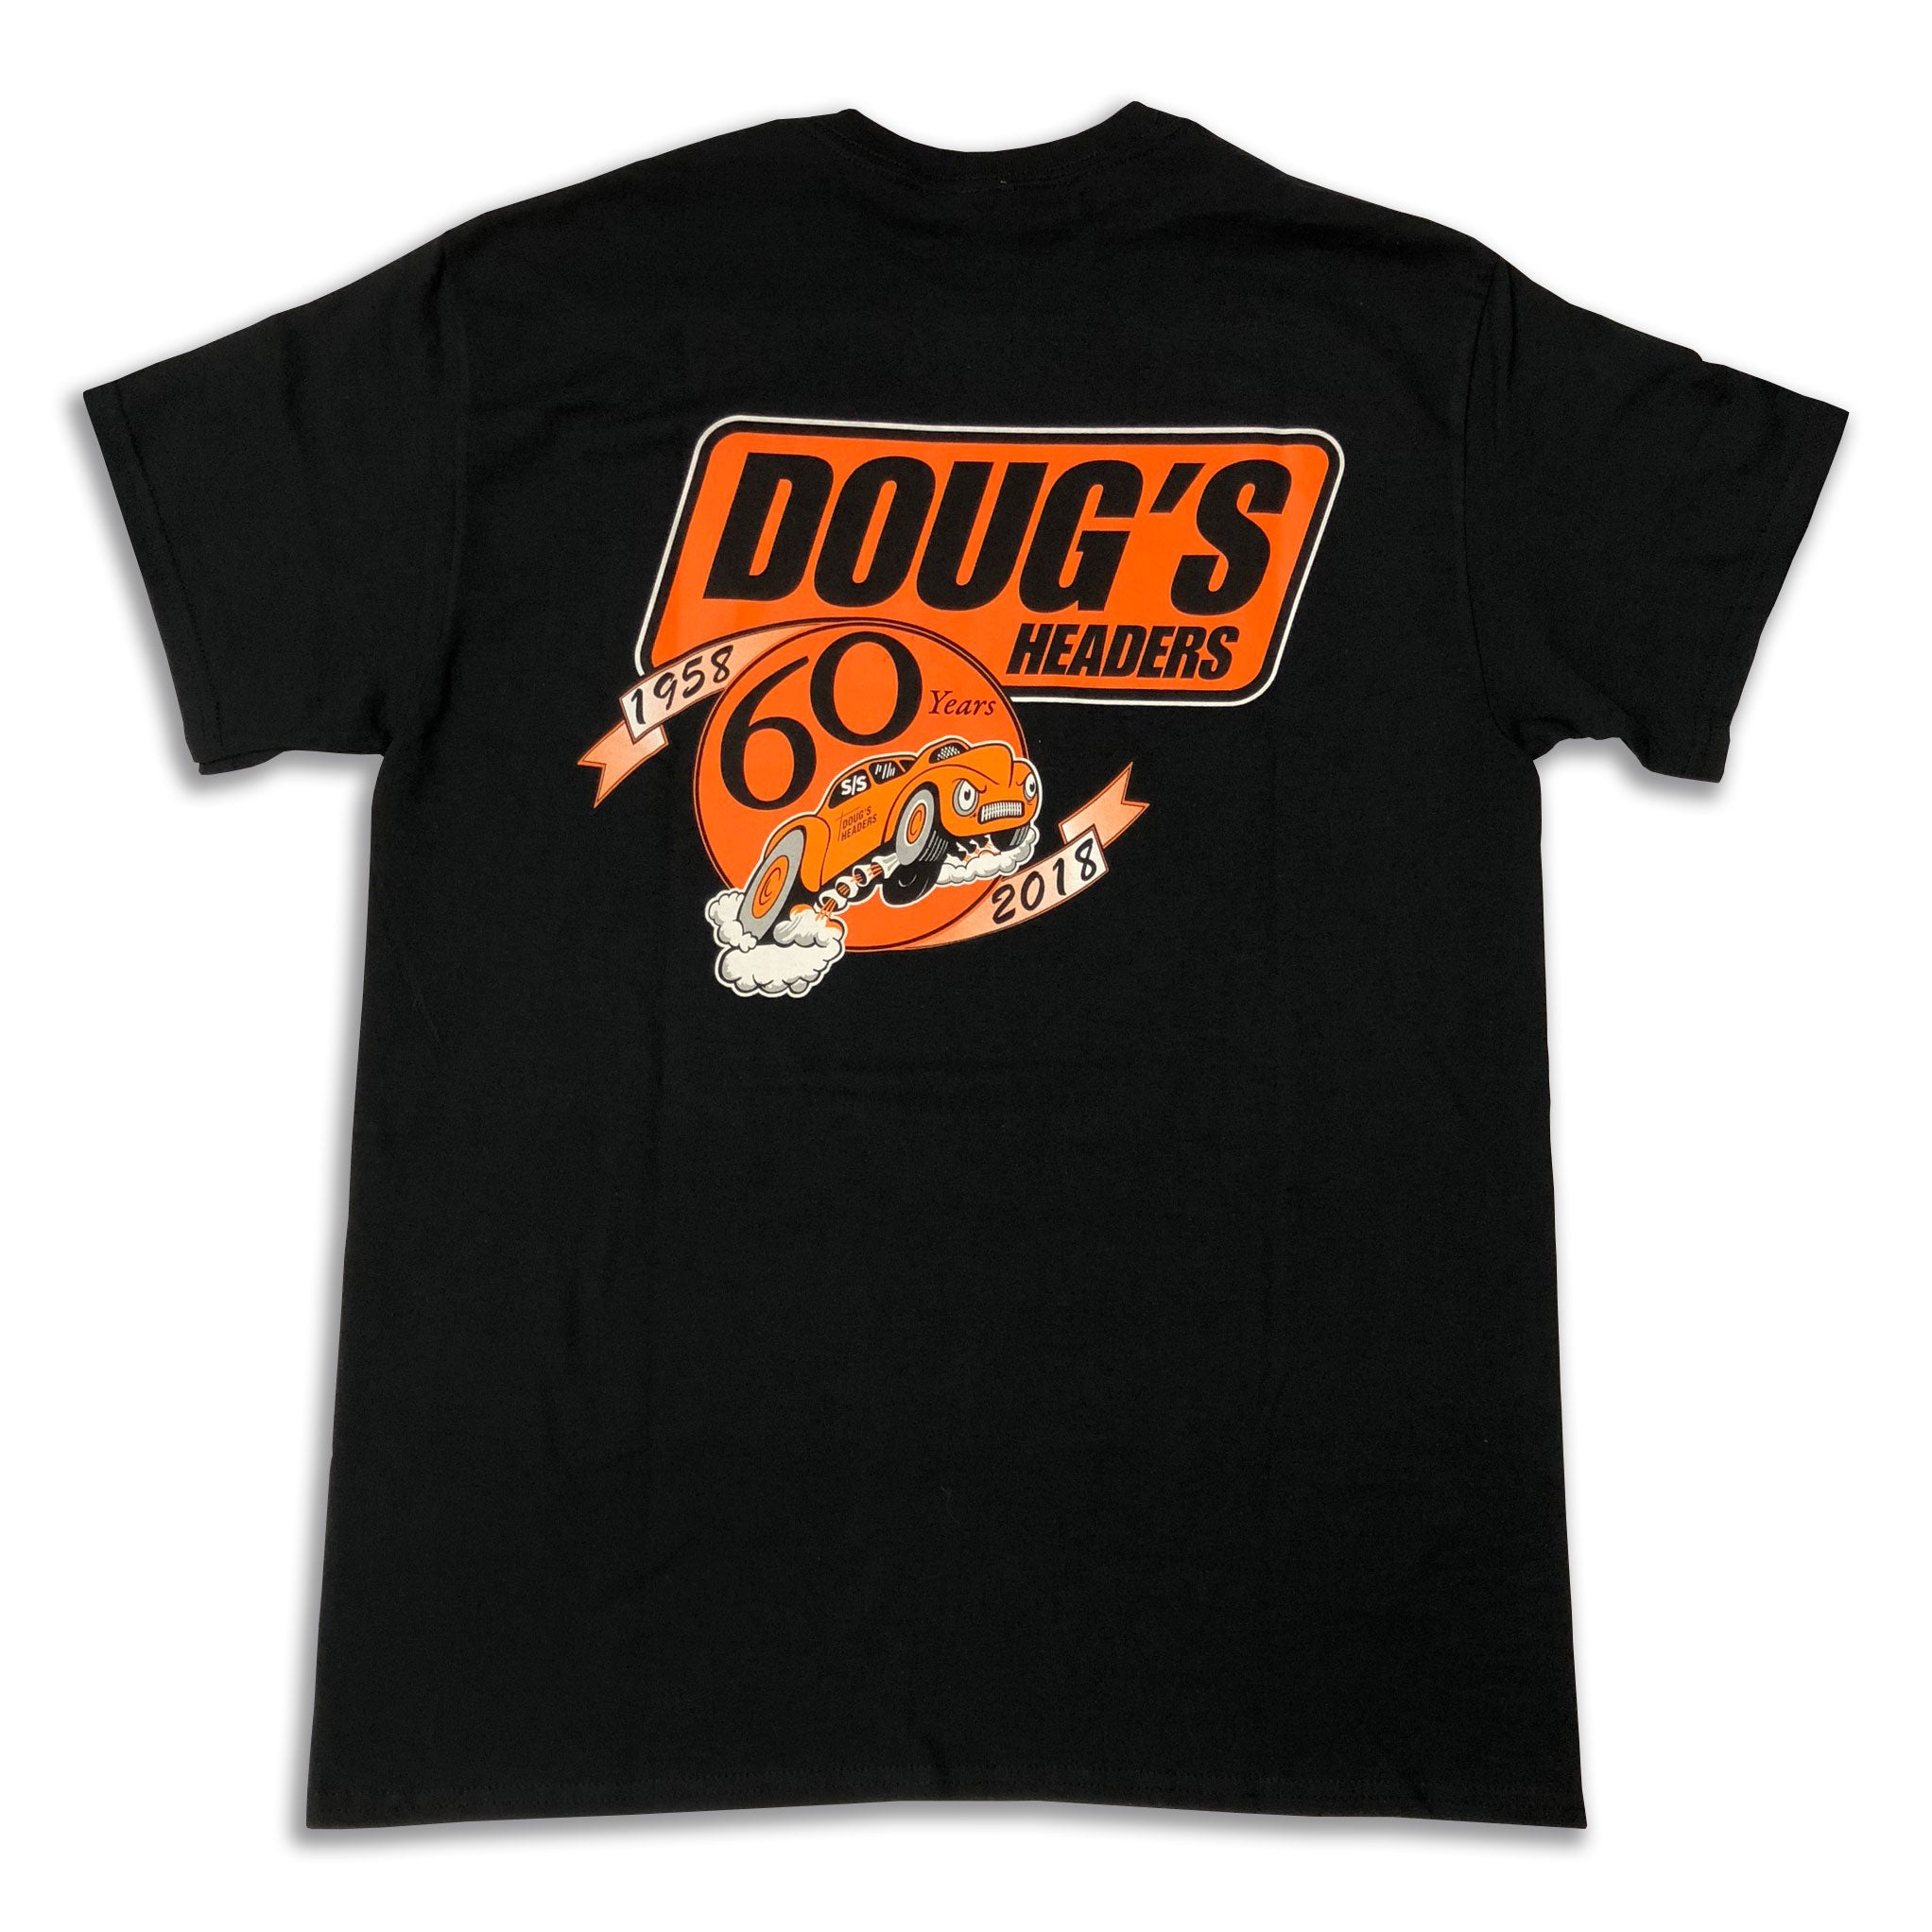 Doug's Headers T-Shirt TS401